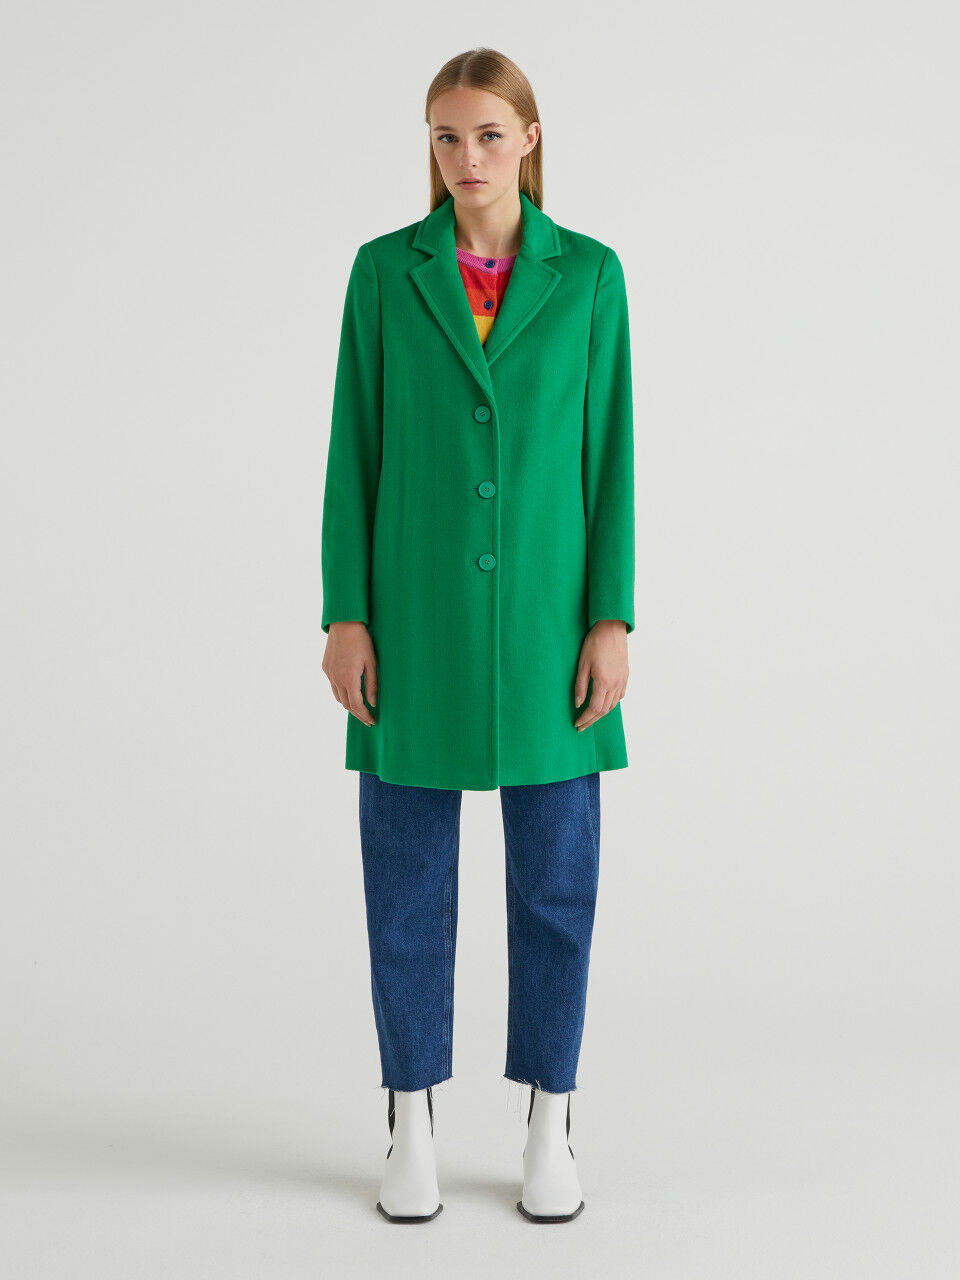 United Colors of Benetton Donna Abbigliamento Cappotti e giubbotti Giacche Giacche a vento Spolverino Lungo Sfoderato 